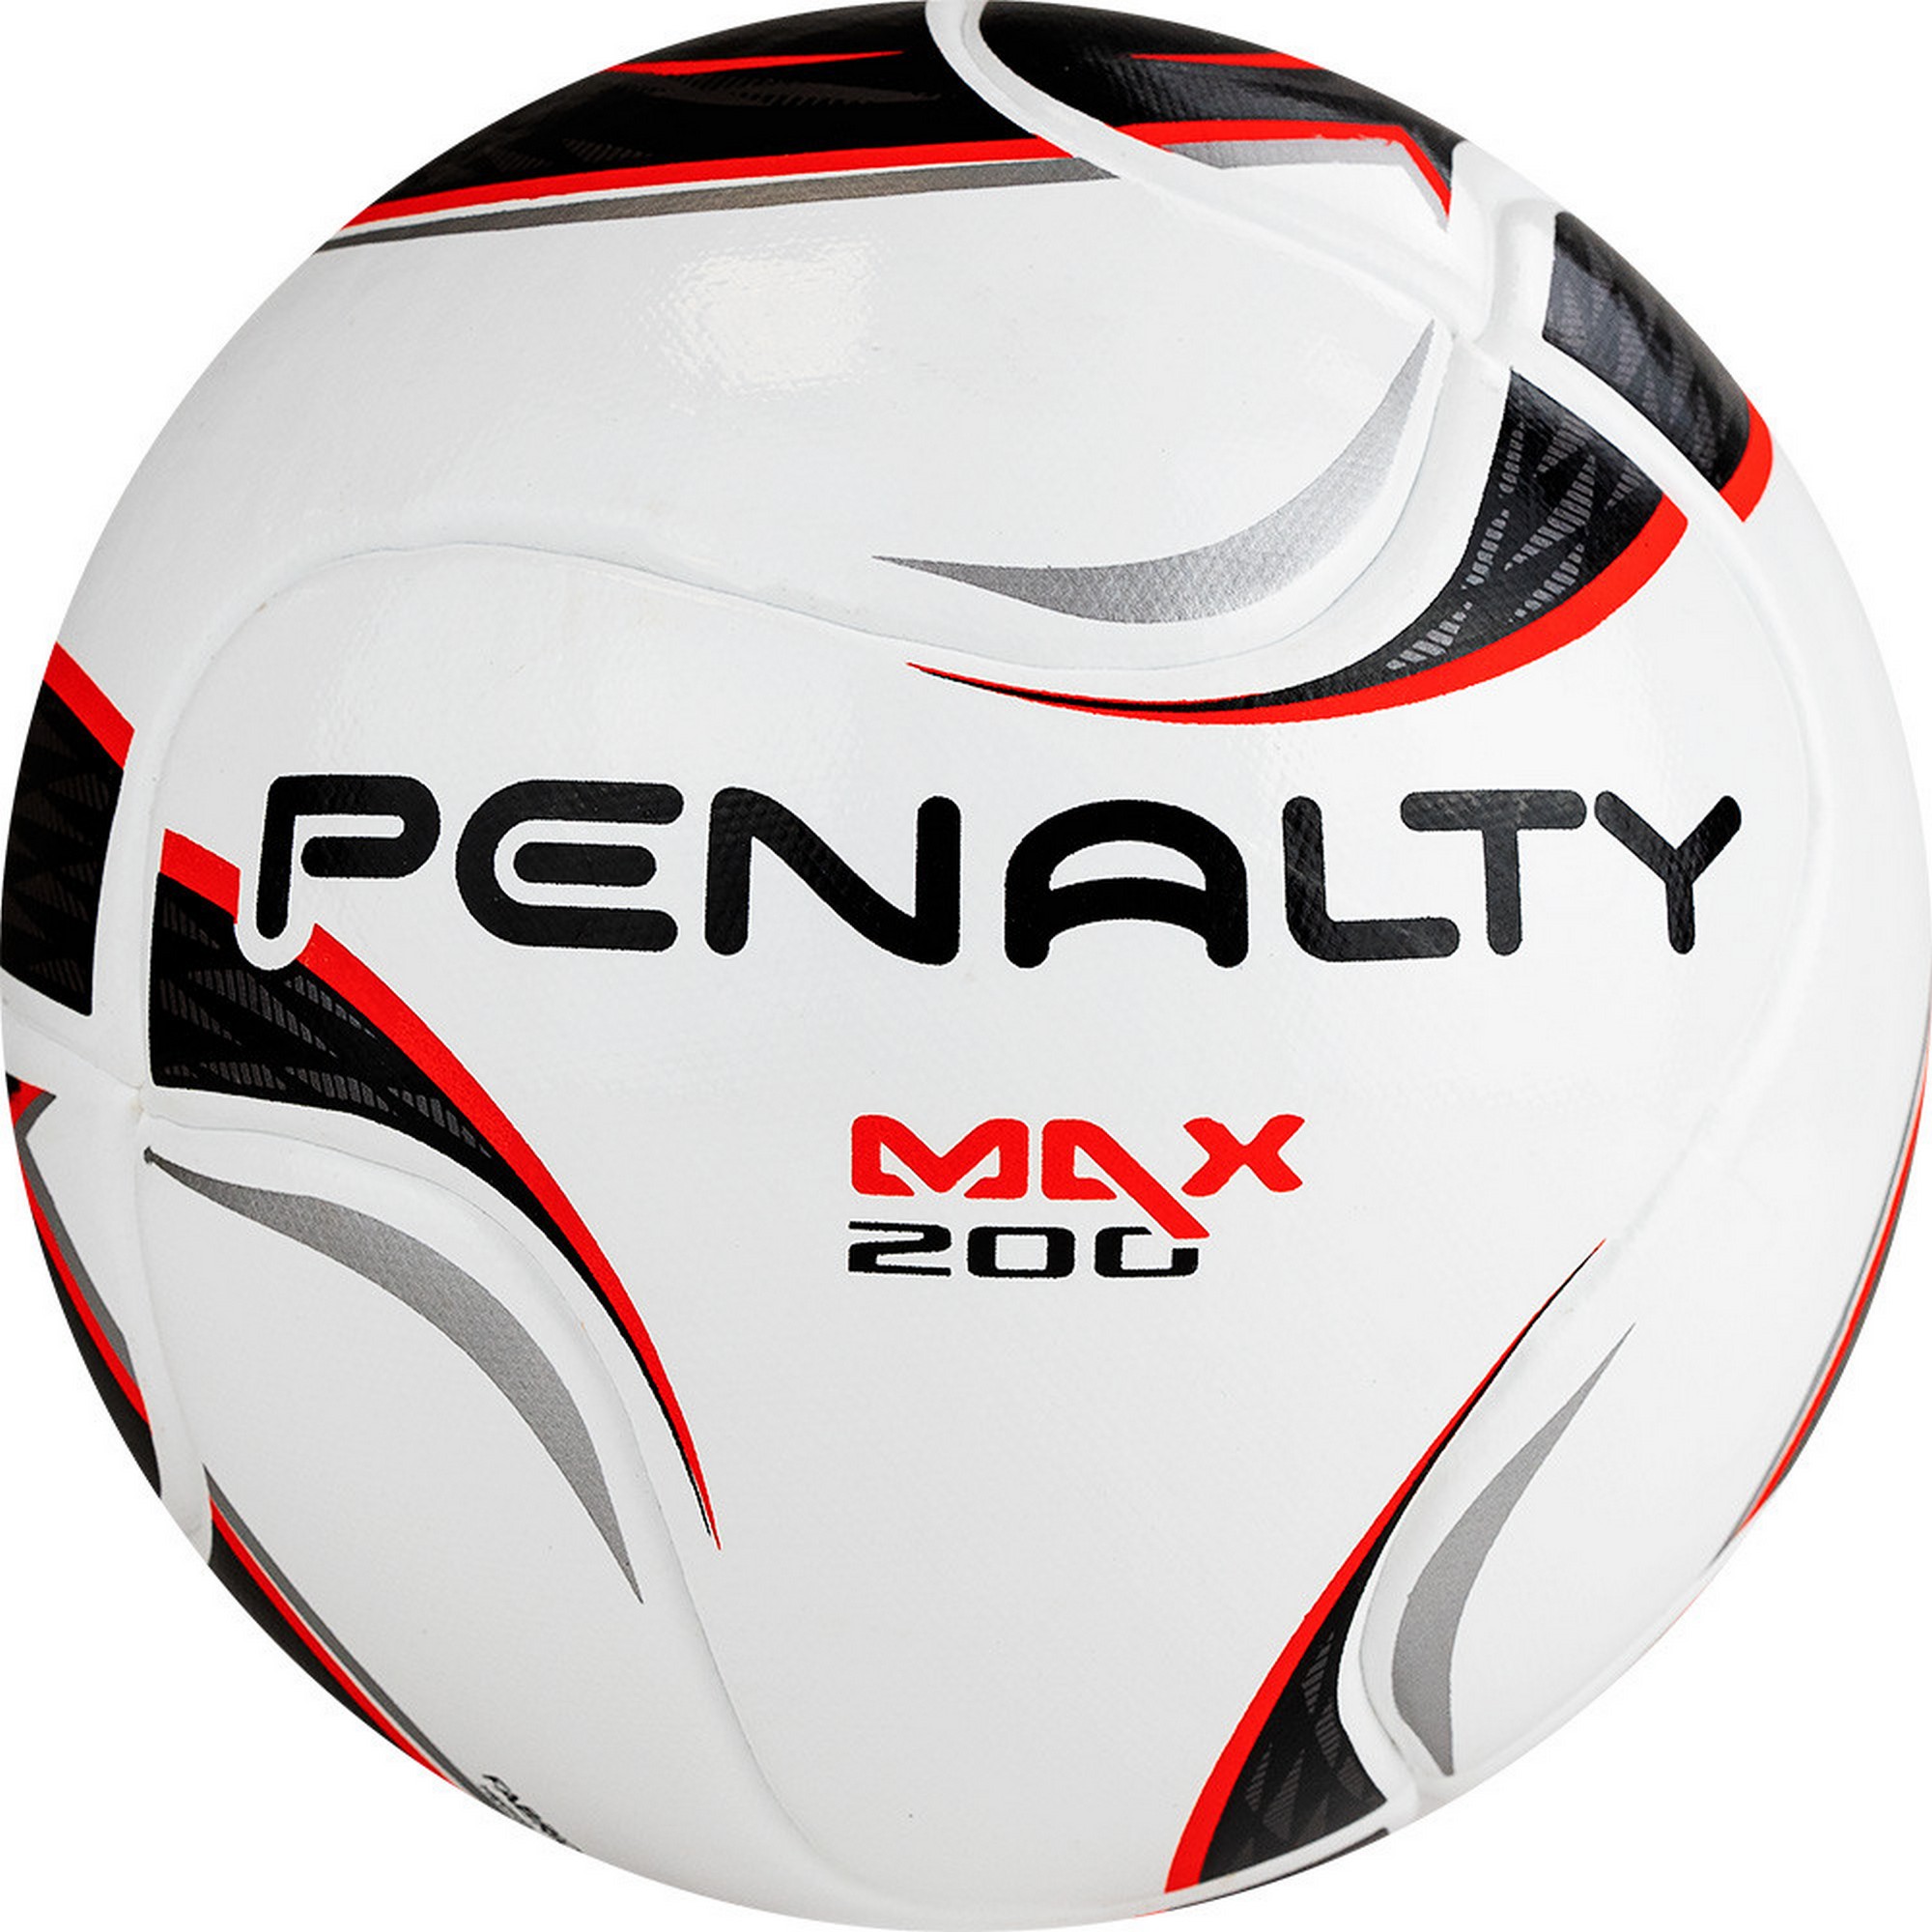 Мяч футзальный Penalty BOLA FUTSAL MAX 200 TERM XXII 5416291160-U р.JR13,  - купить со скидкой